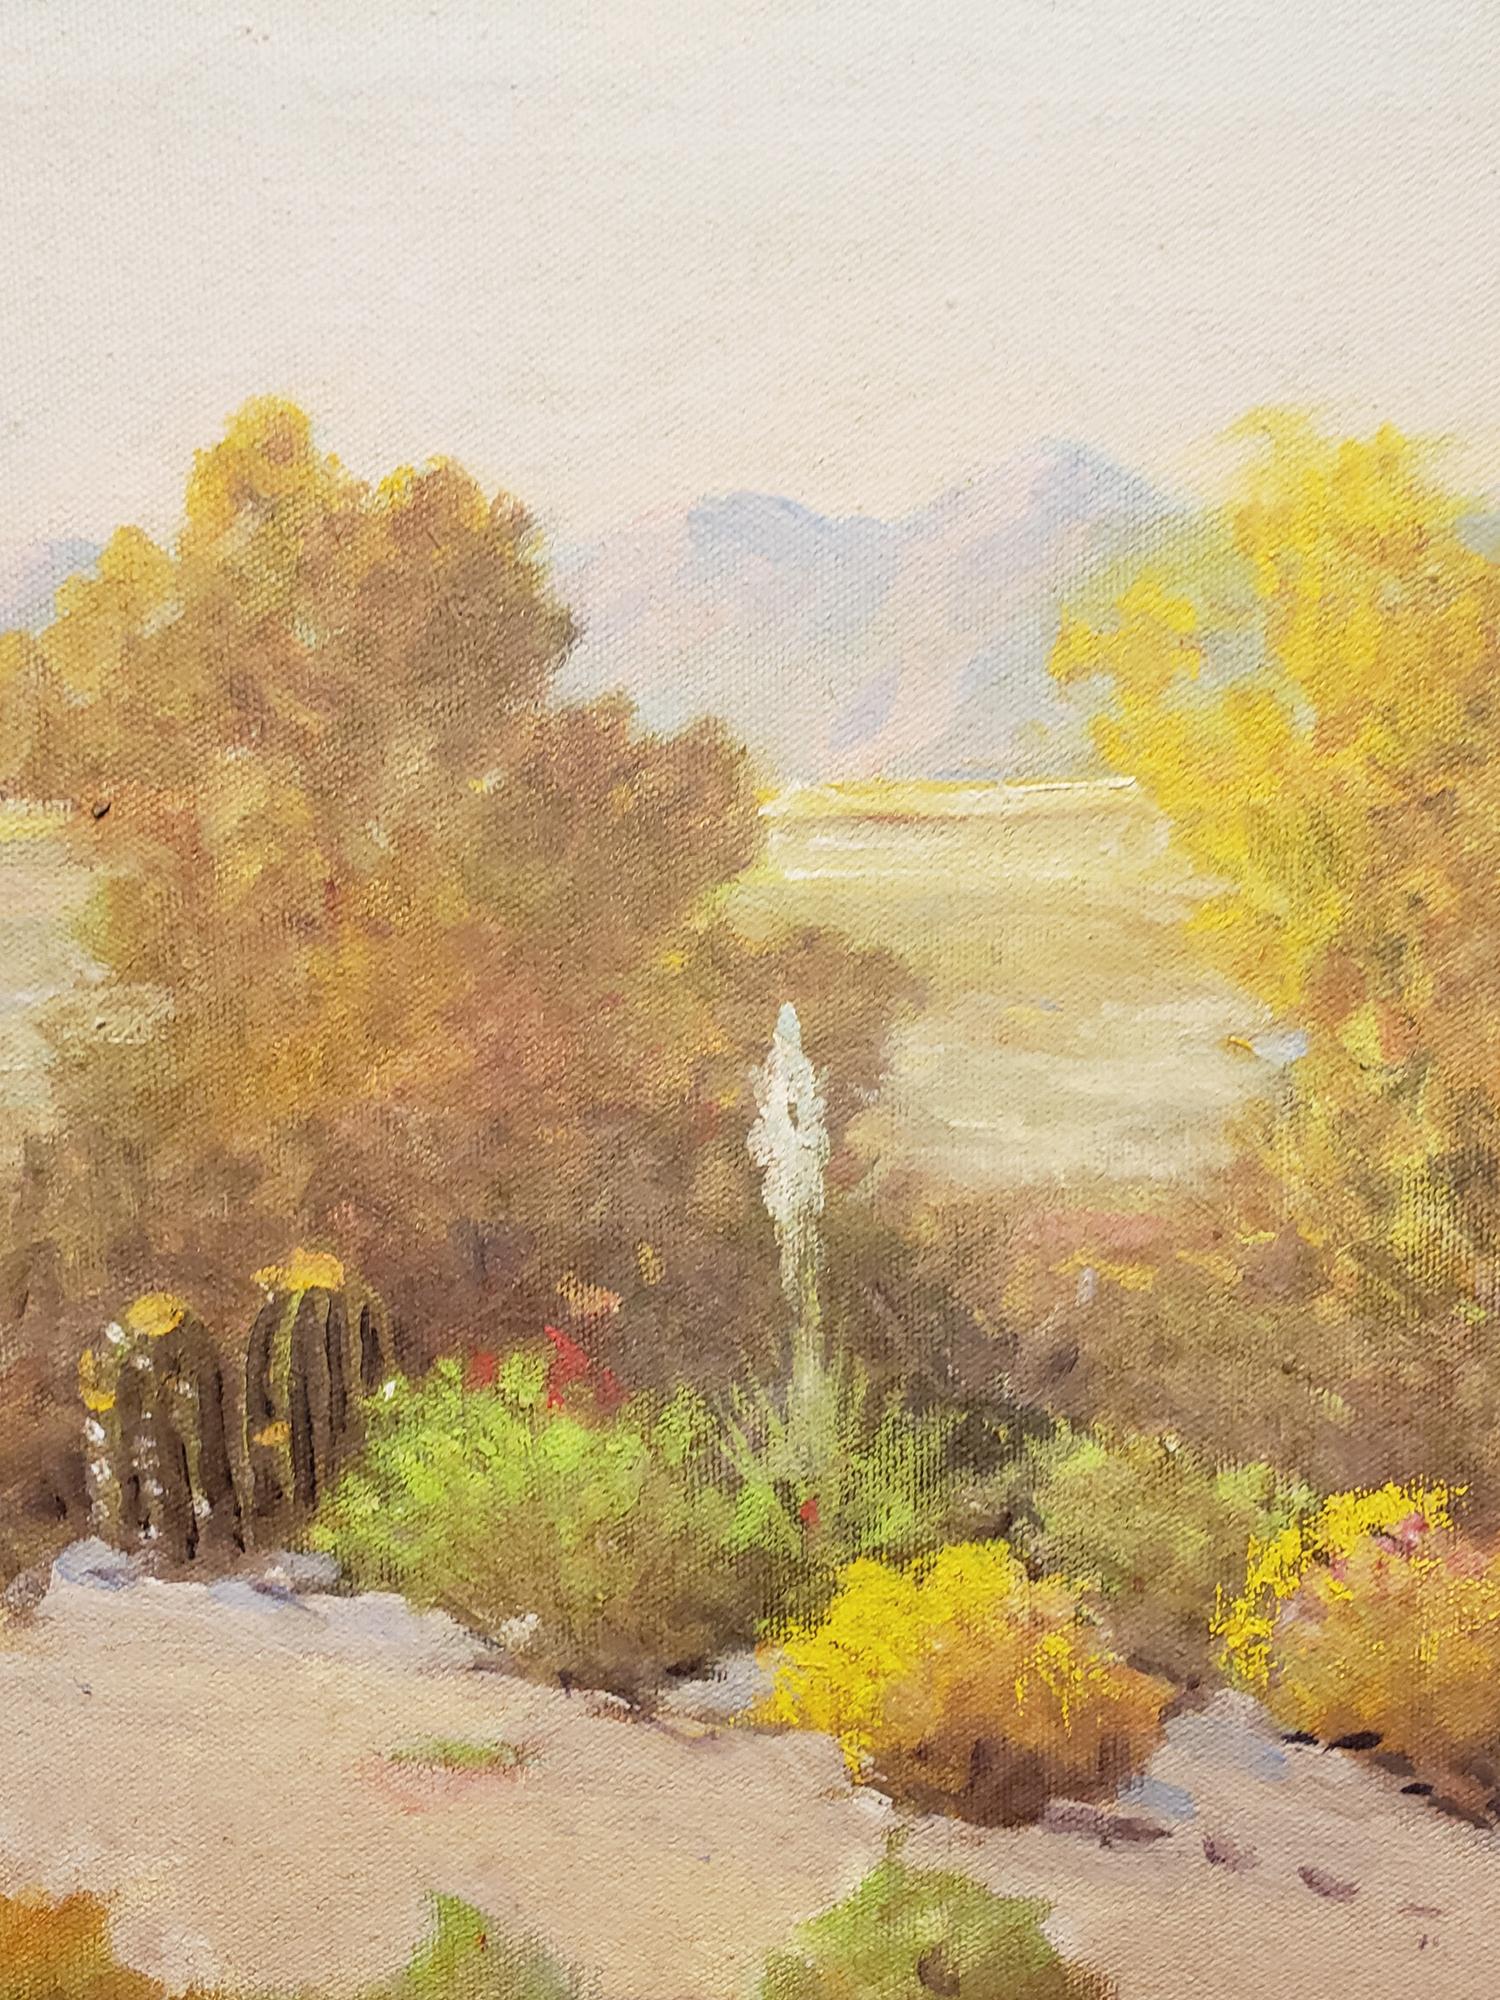 Untitled (Superstition Wilderness, Arizona Desert Scene) - Brown Landscape Painting by George Sanders Bickerstaff